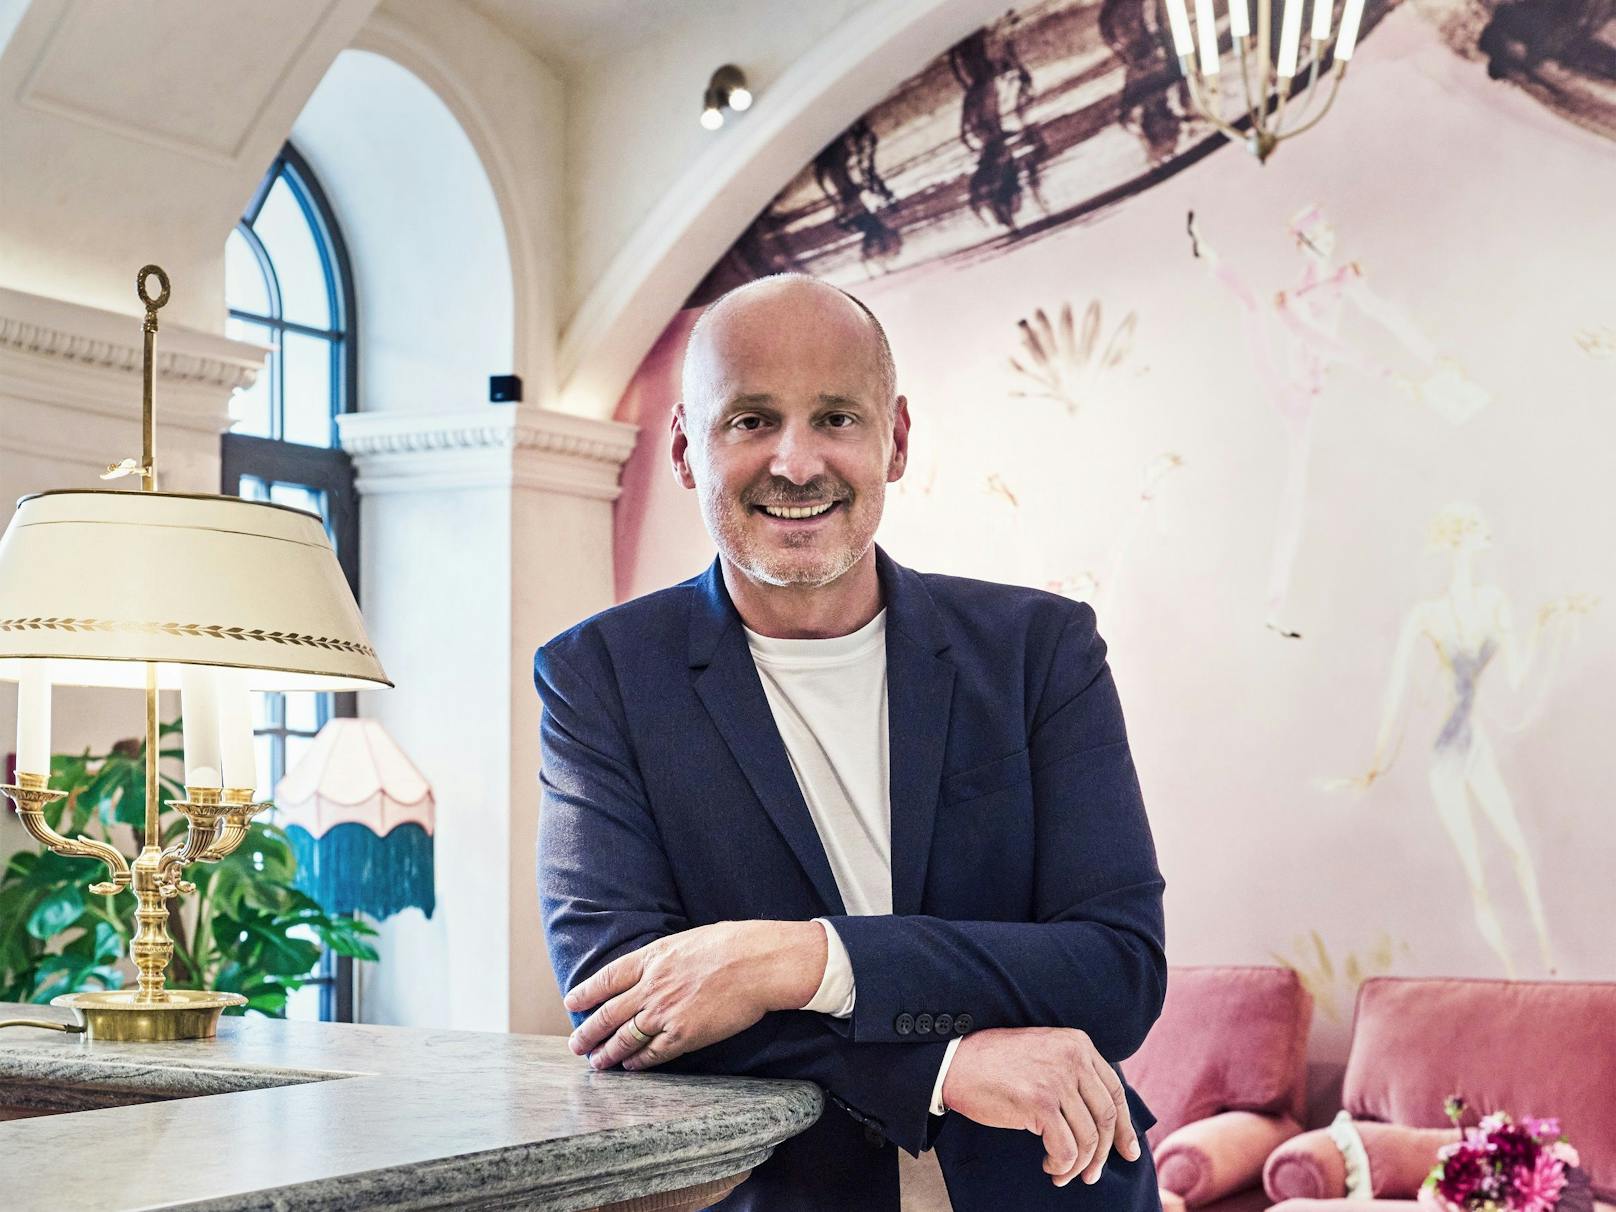 Hotelchef Bernd Schlacher in der Lobby des neuen Hotels "Motto" in der Mariahilfer Straße